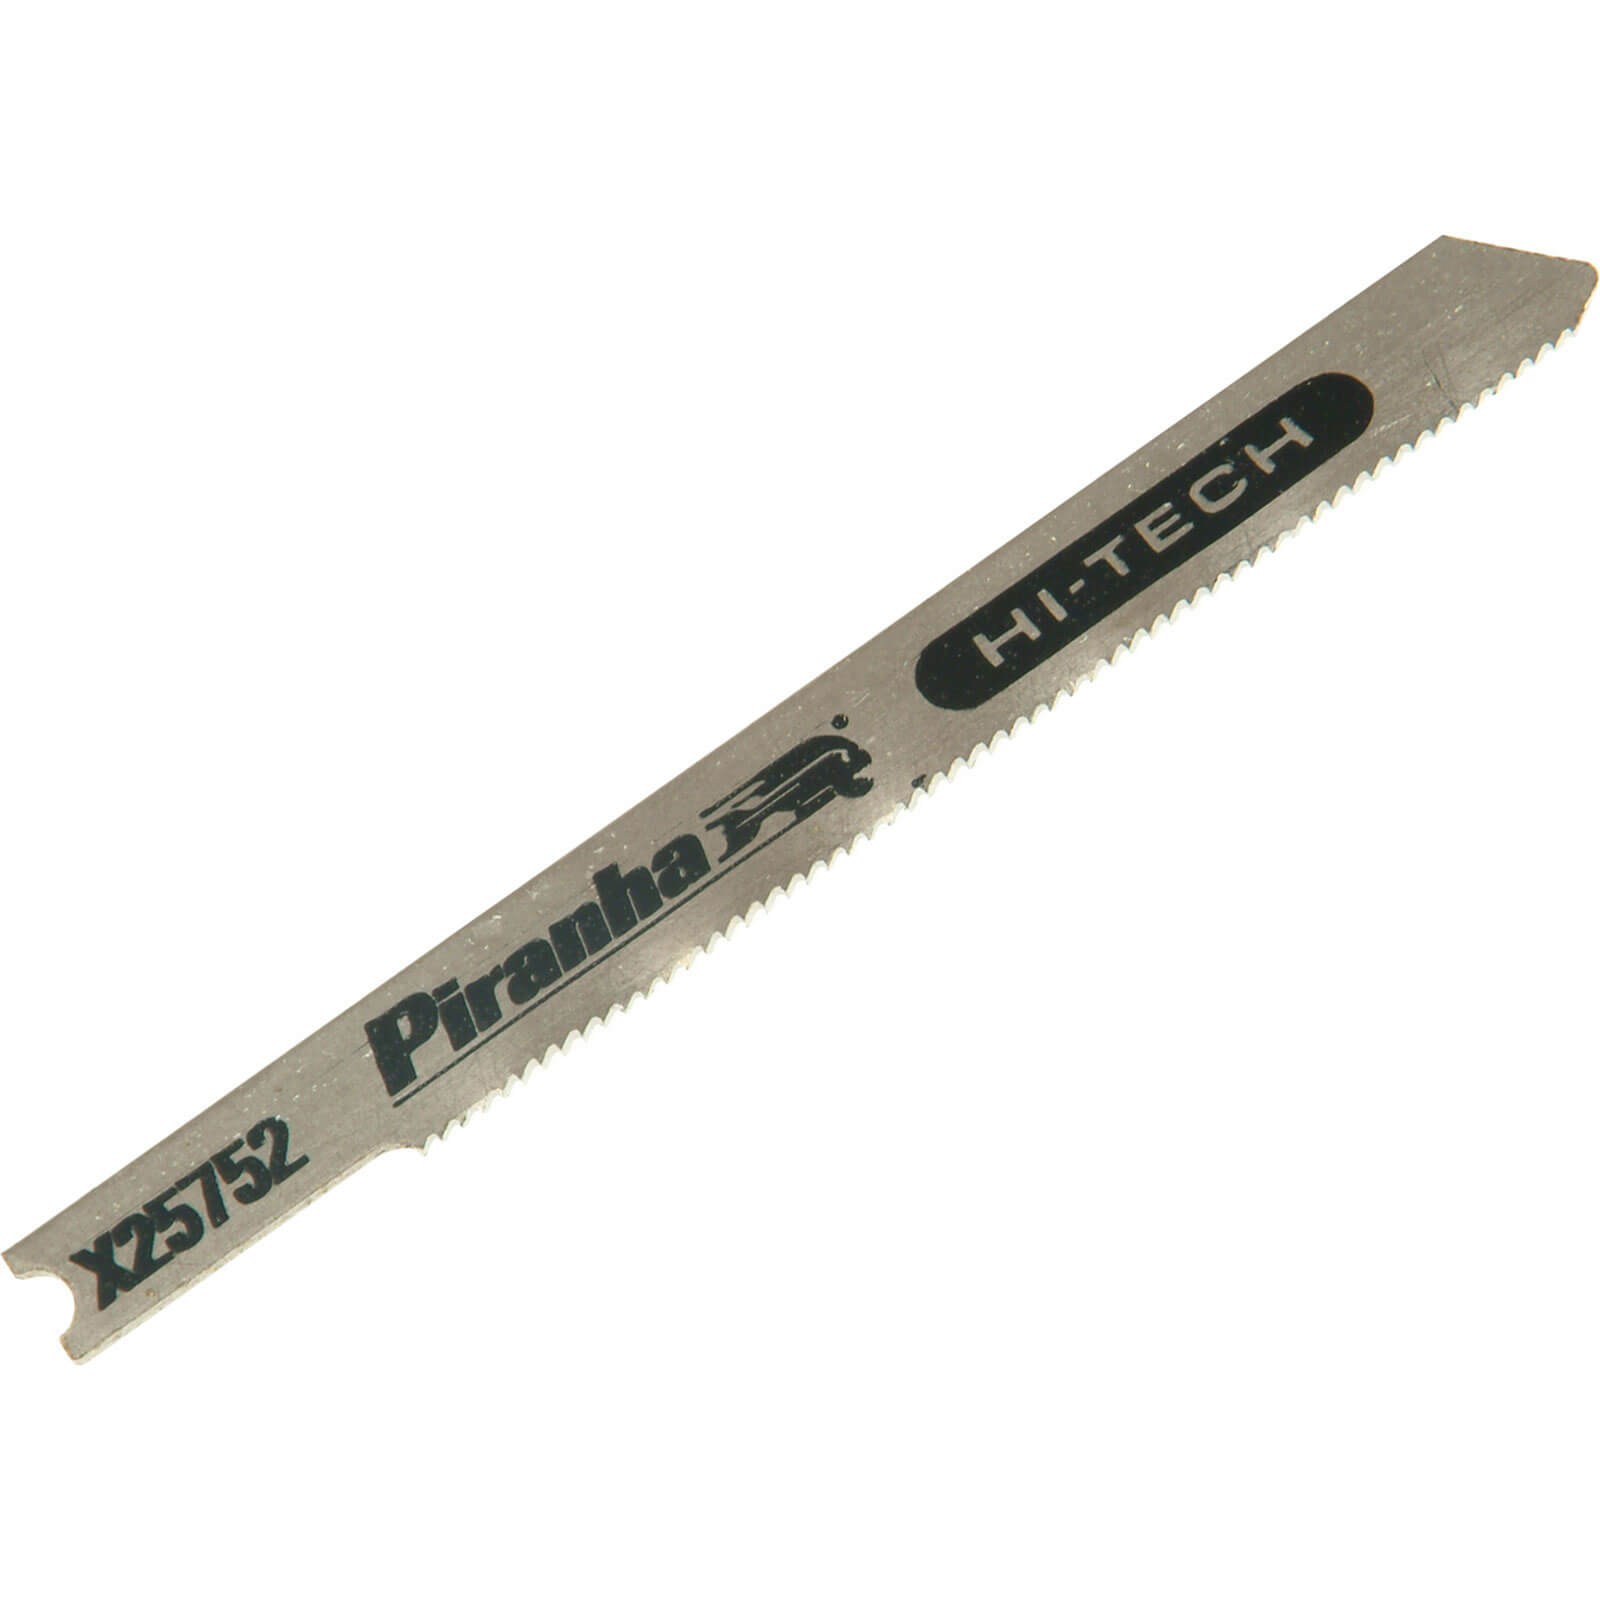 Image of Black and Decker X25752 Piranha Hi Tech Metal HSS U Shank Jigsaw Blades Pack of 2